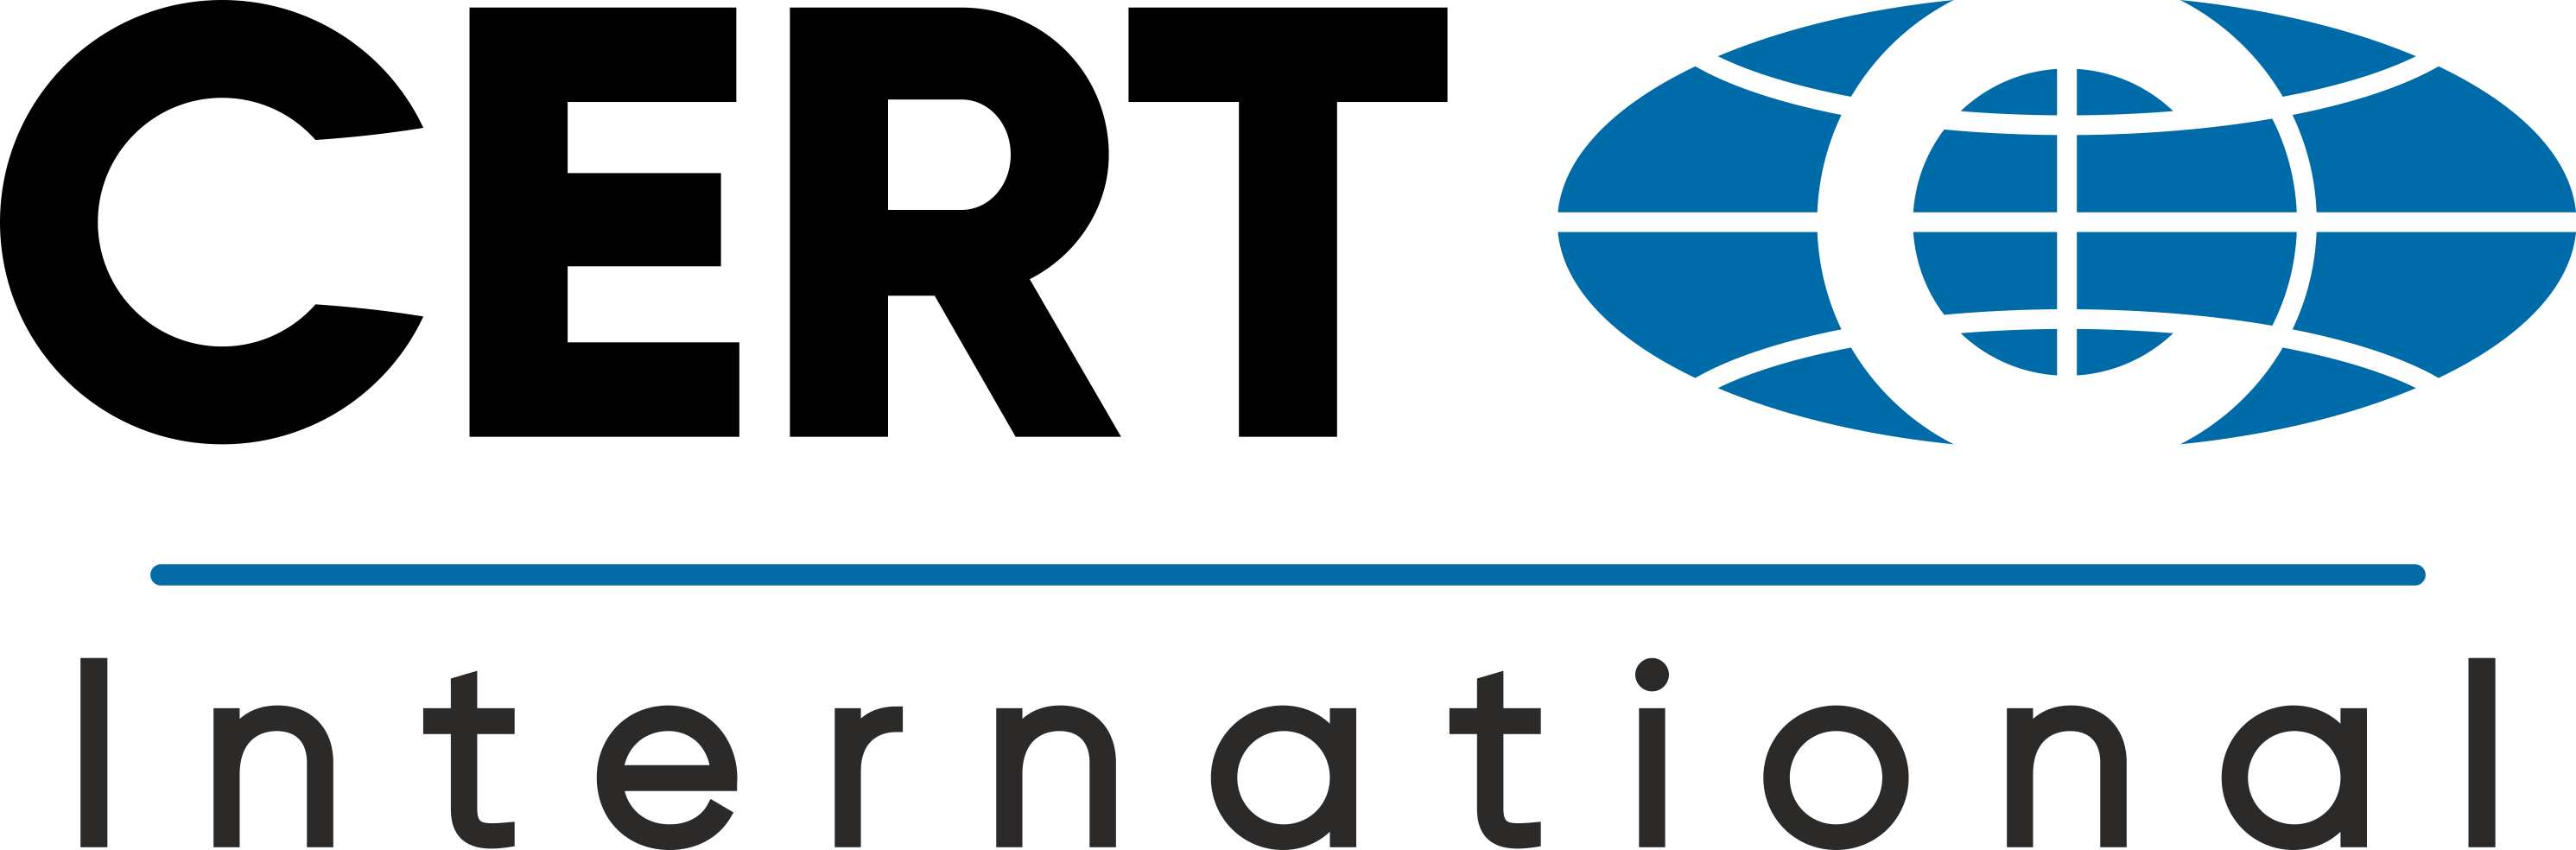 Международный сертификационный центр "Cert International" — Сертификация в России, Украине, Республике Беларусь, Казахстане, Узбекистане, Киргизии и Таджикистане